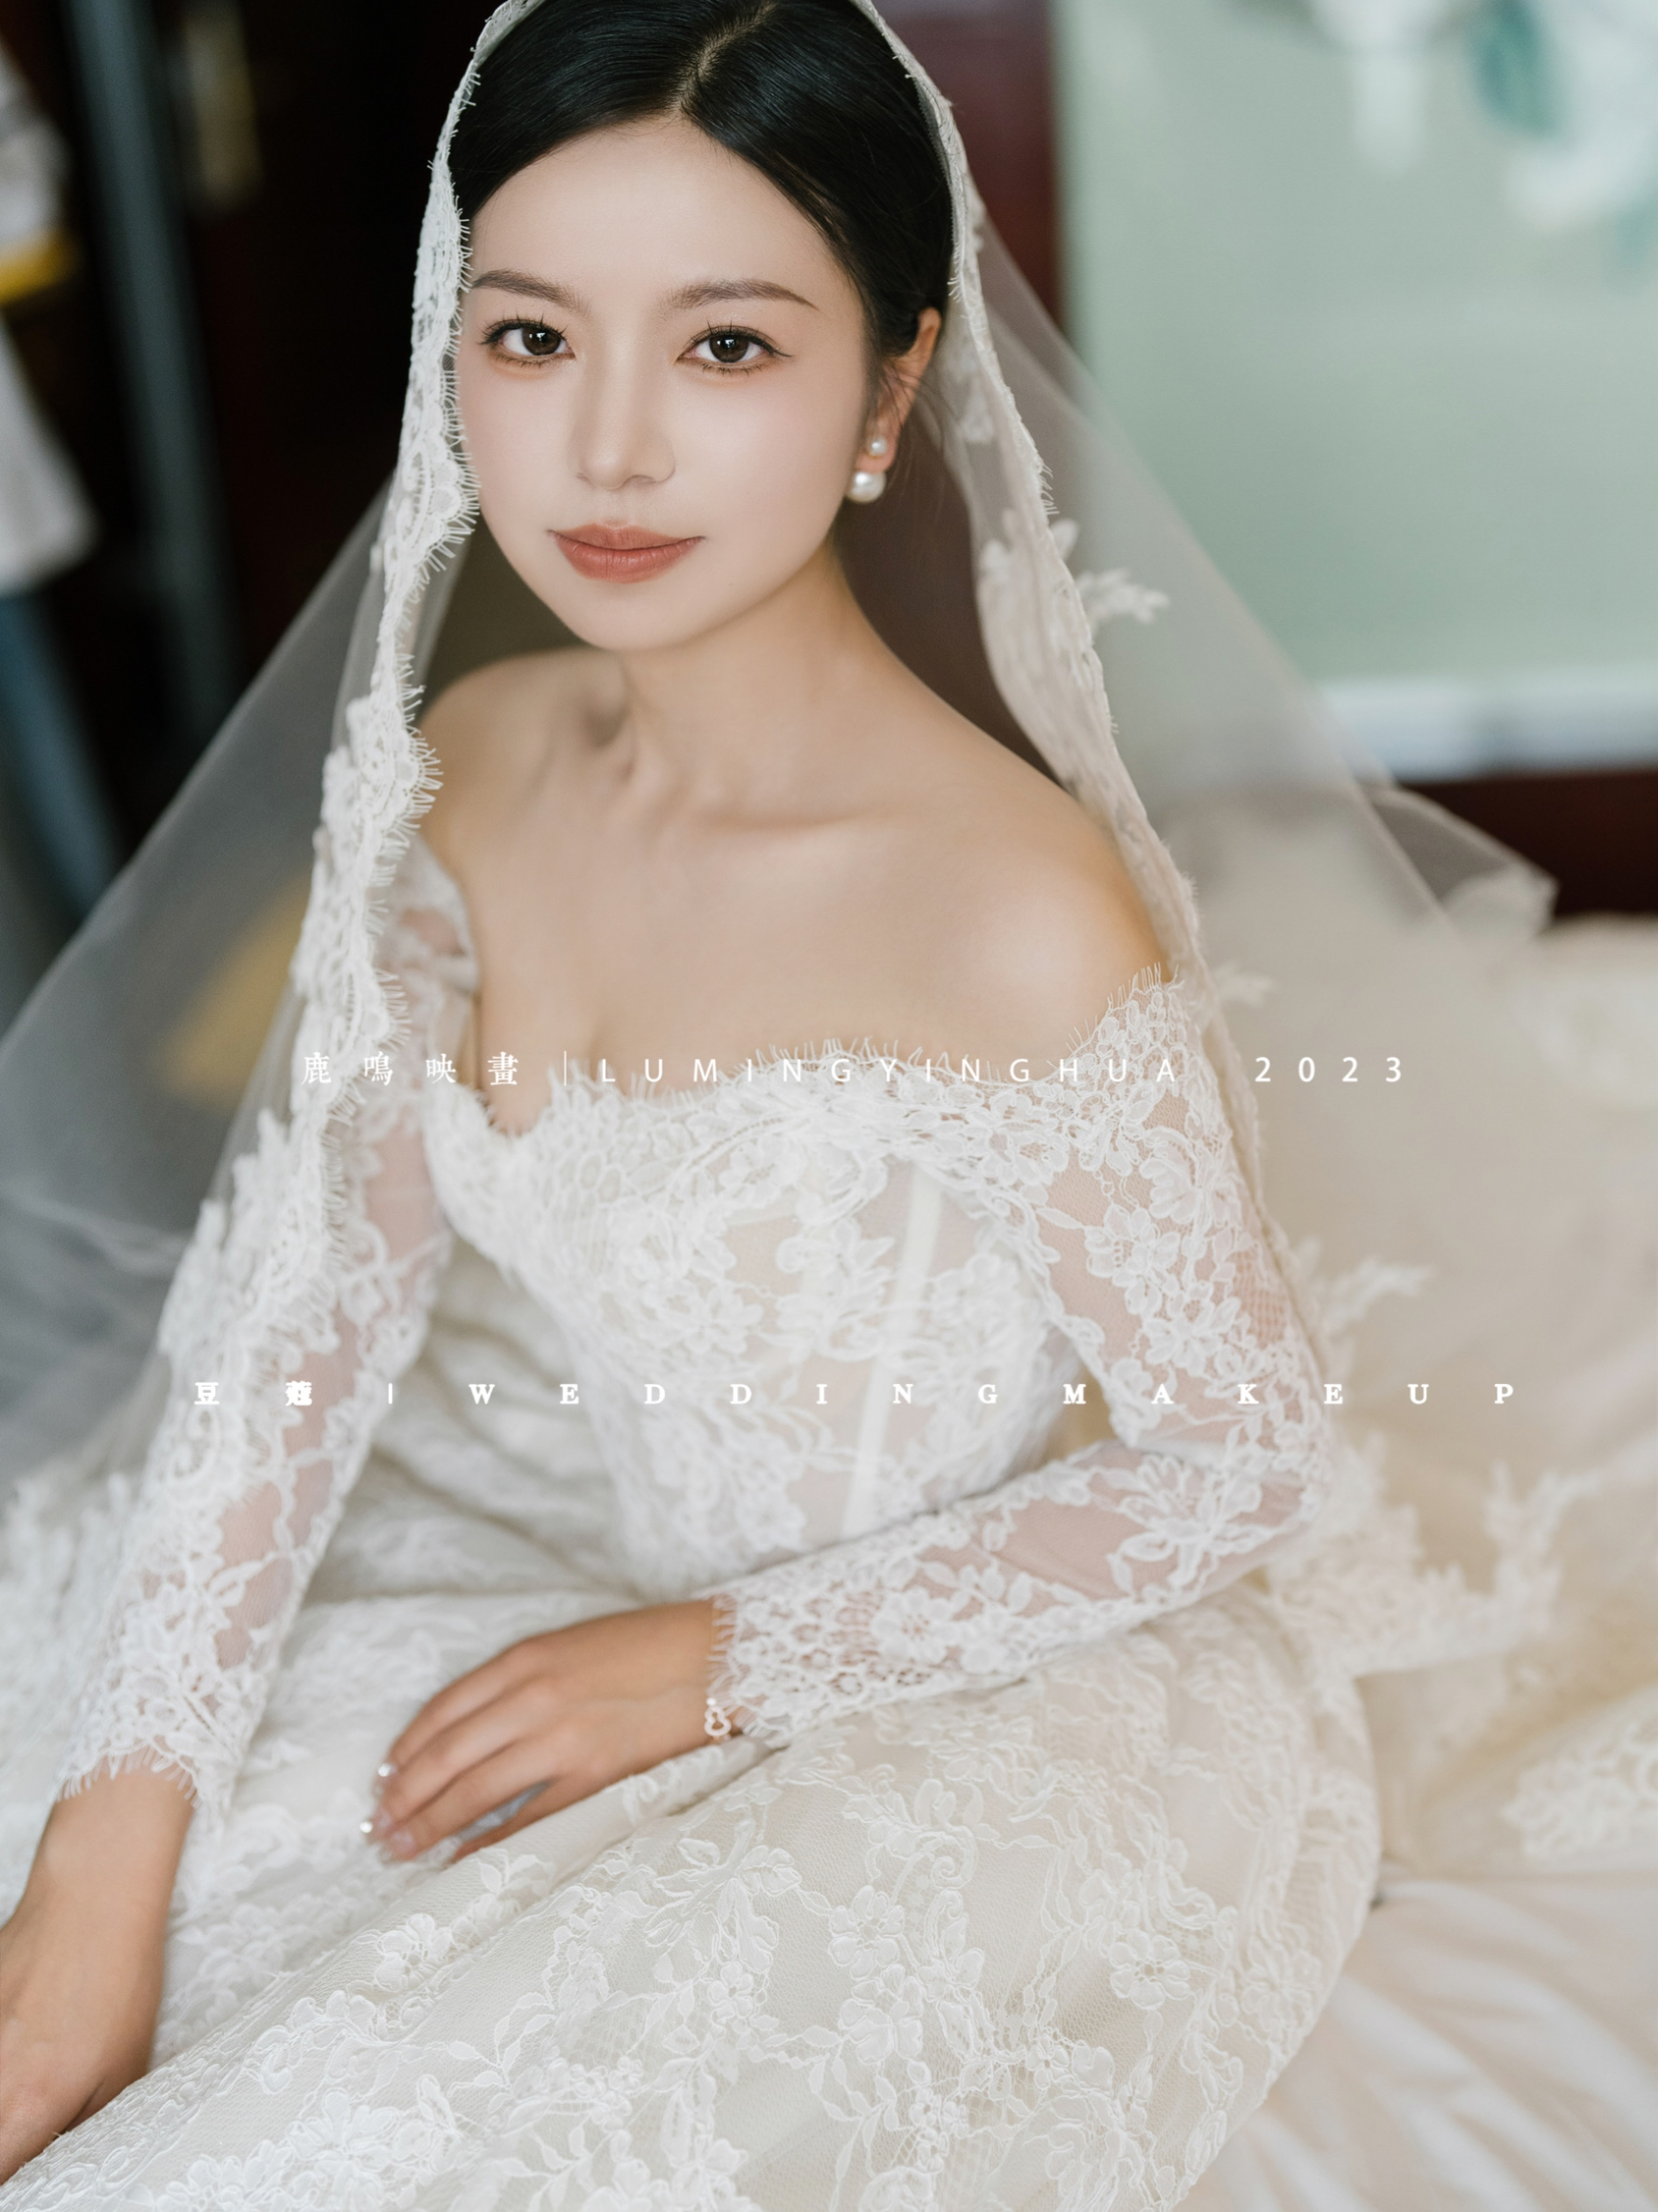 简约韩式新娘造型